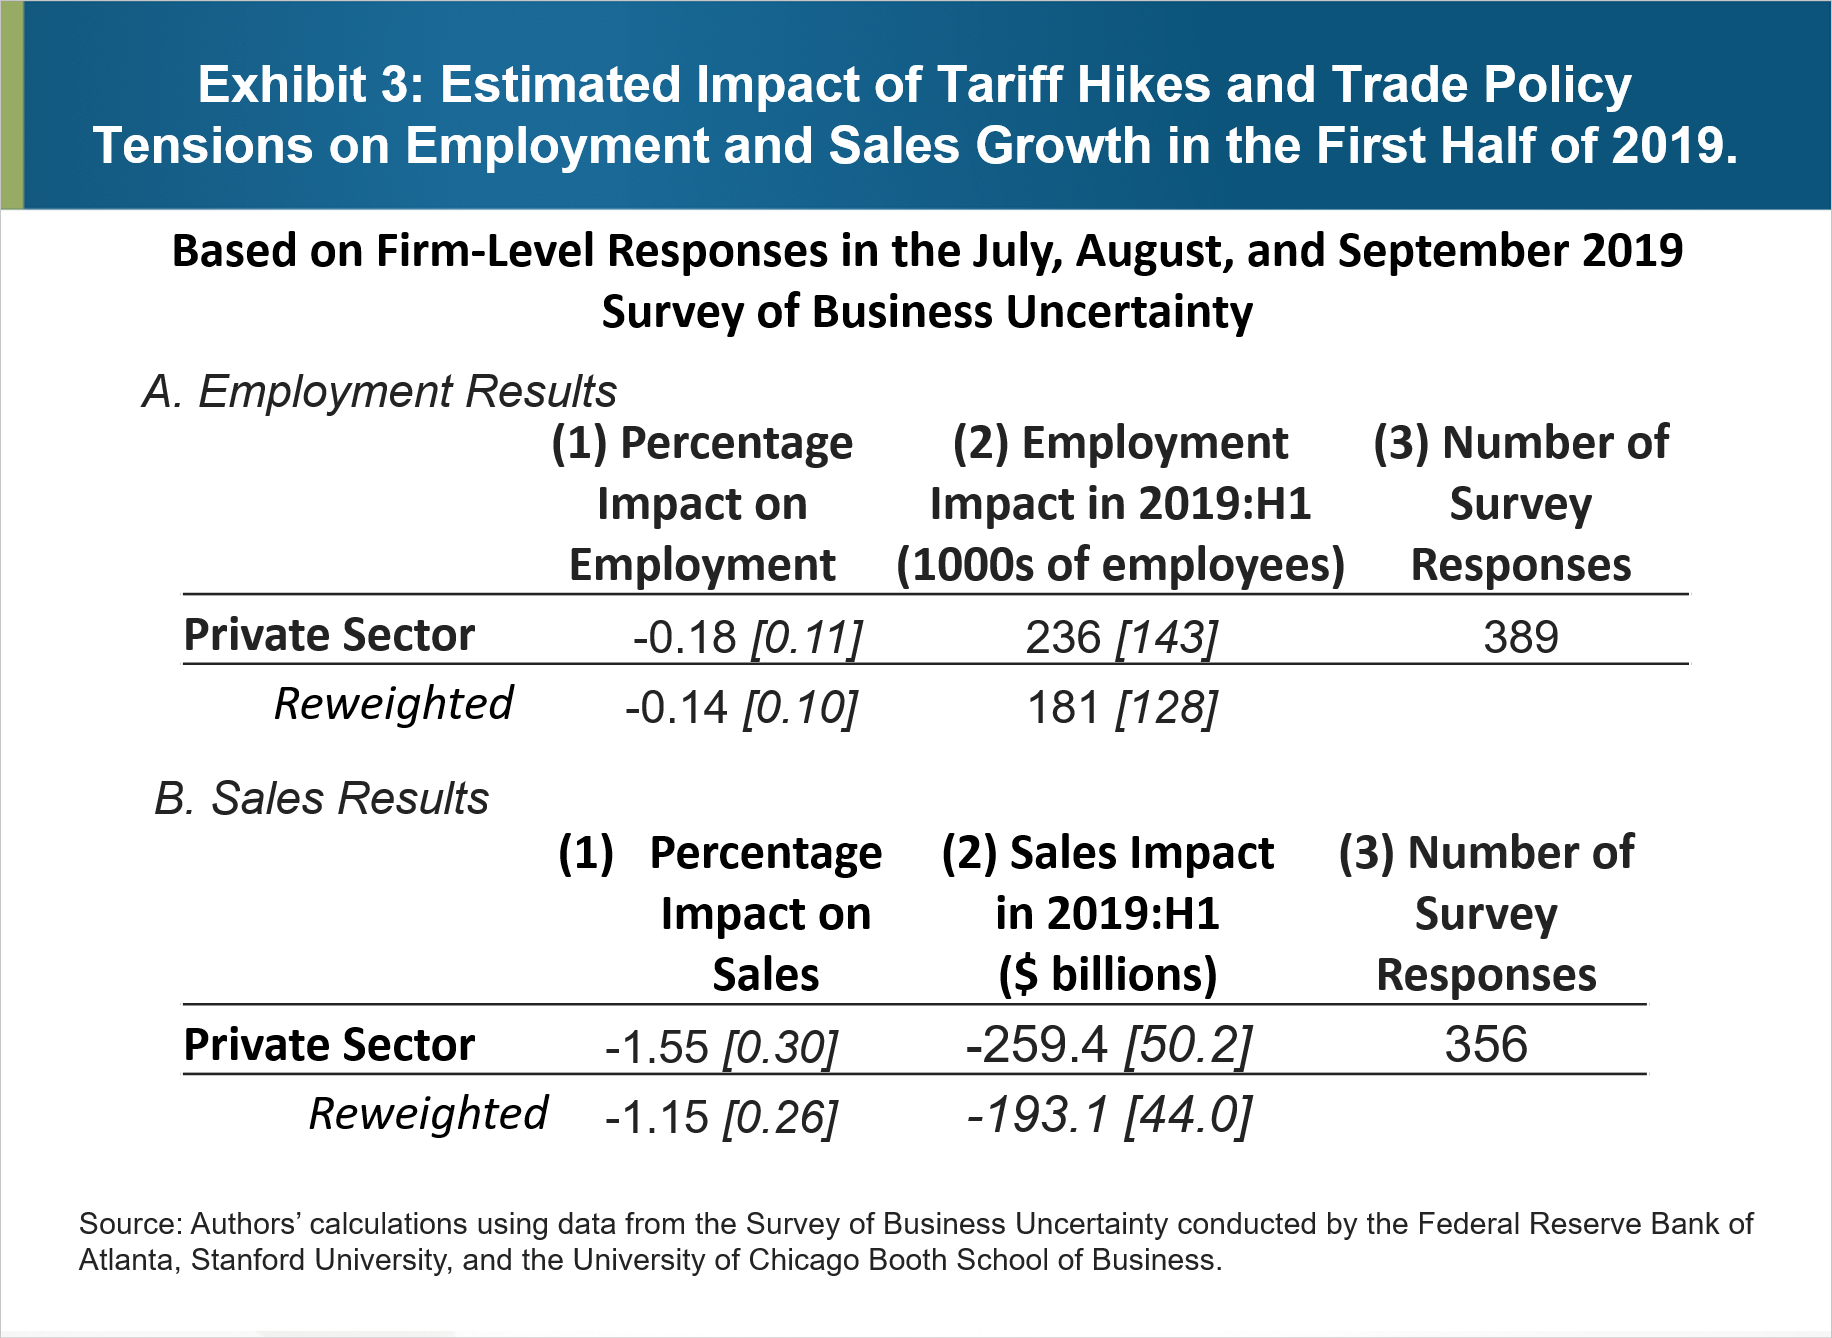 3. pielikums. Paredzamā tarifu paaugstināšanas un tirdzniecības politikas spriedzes ietekme uz nodarbinātības un pārdošanas apjomu pieaugumu 2019. gada pirmajā pusē